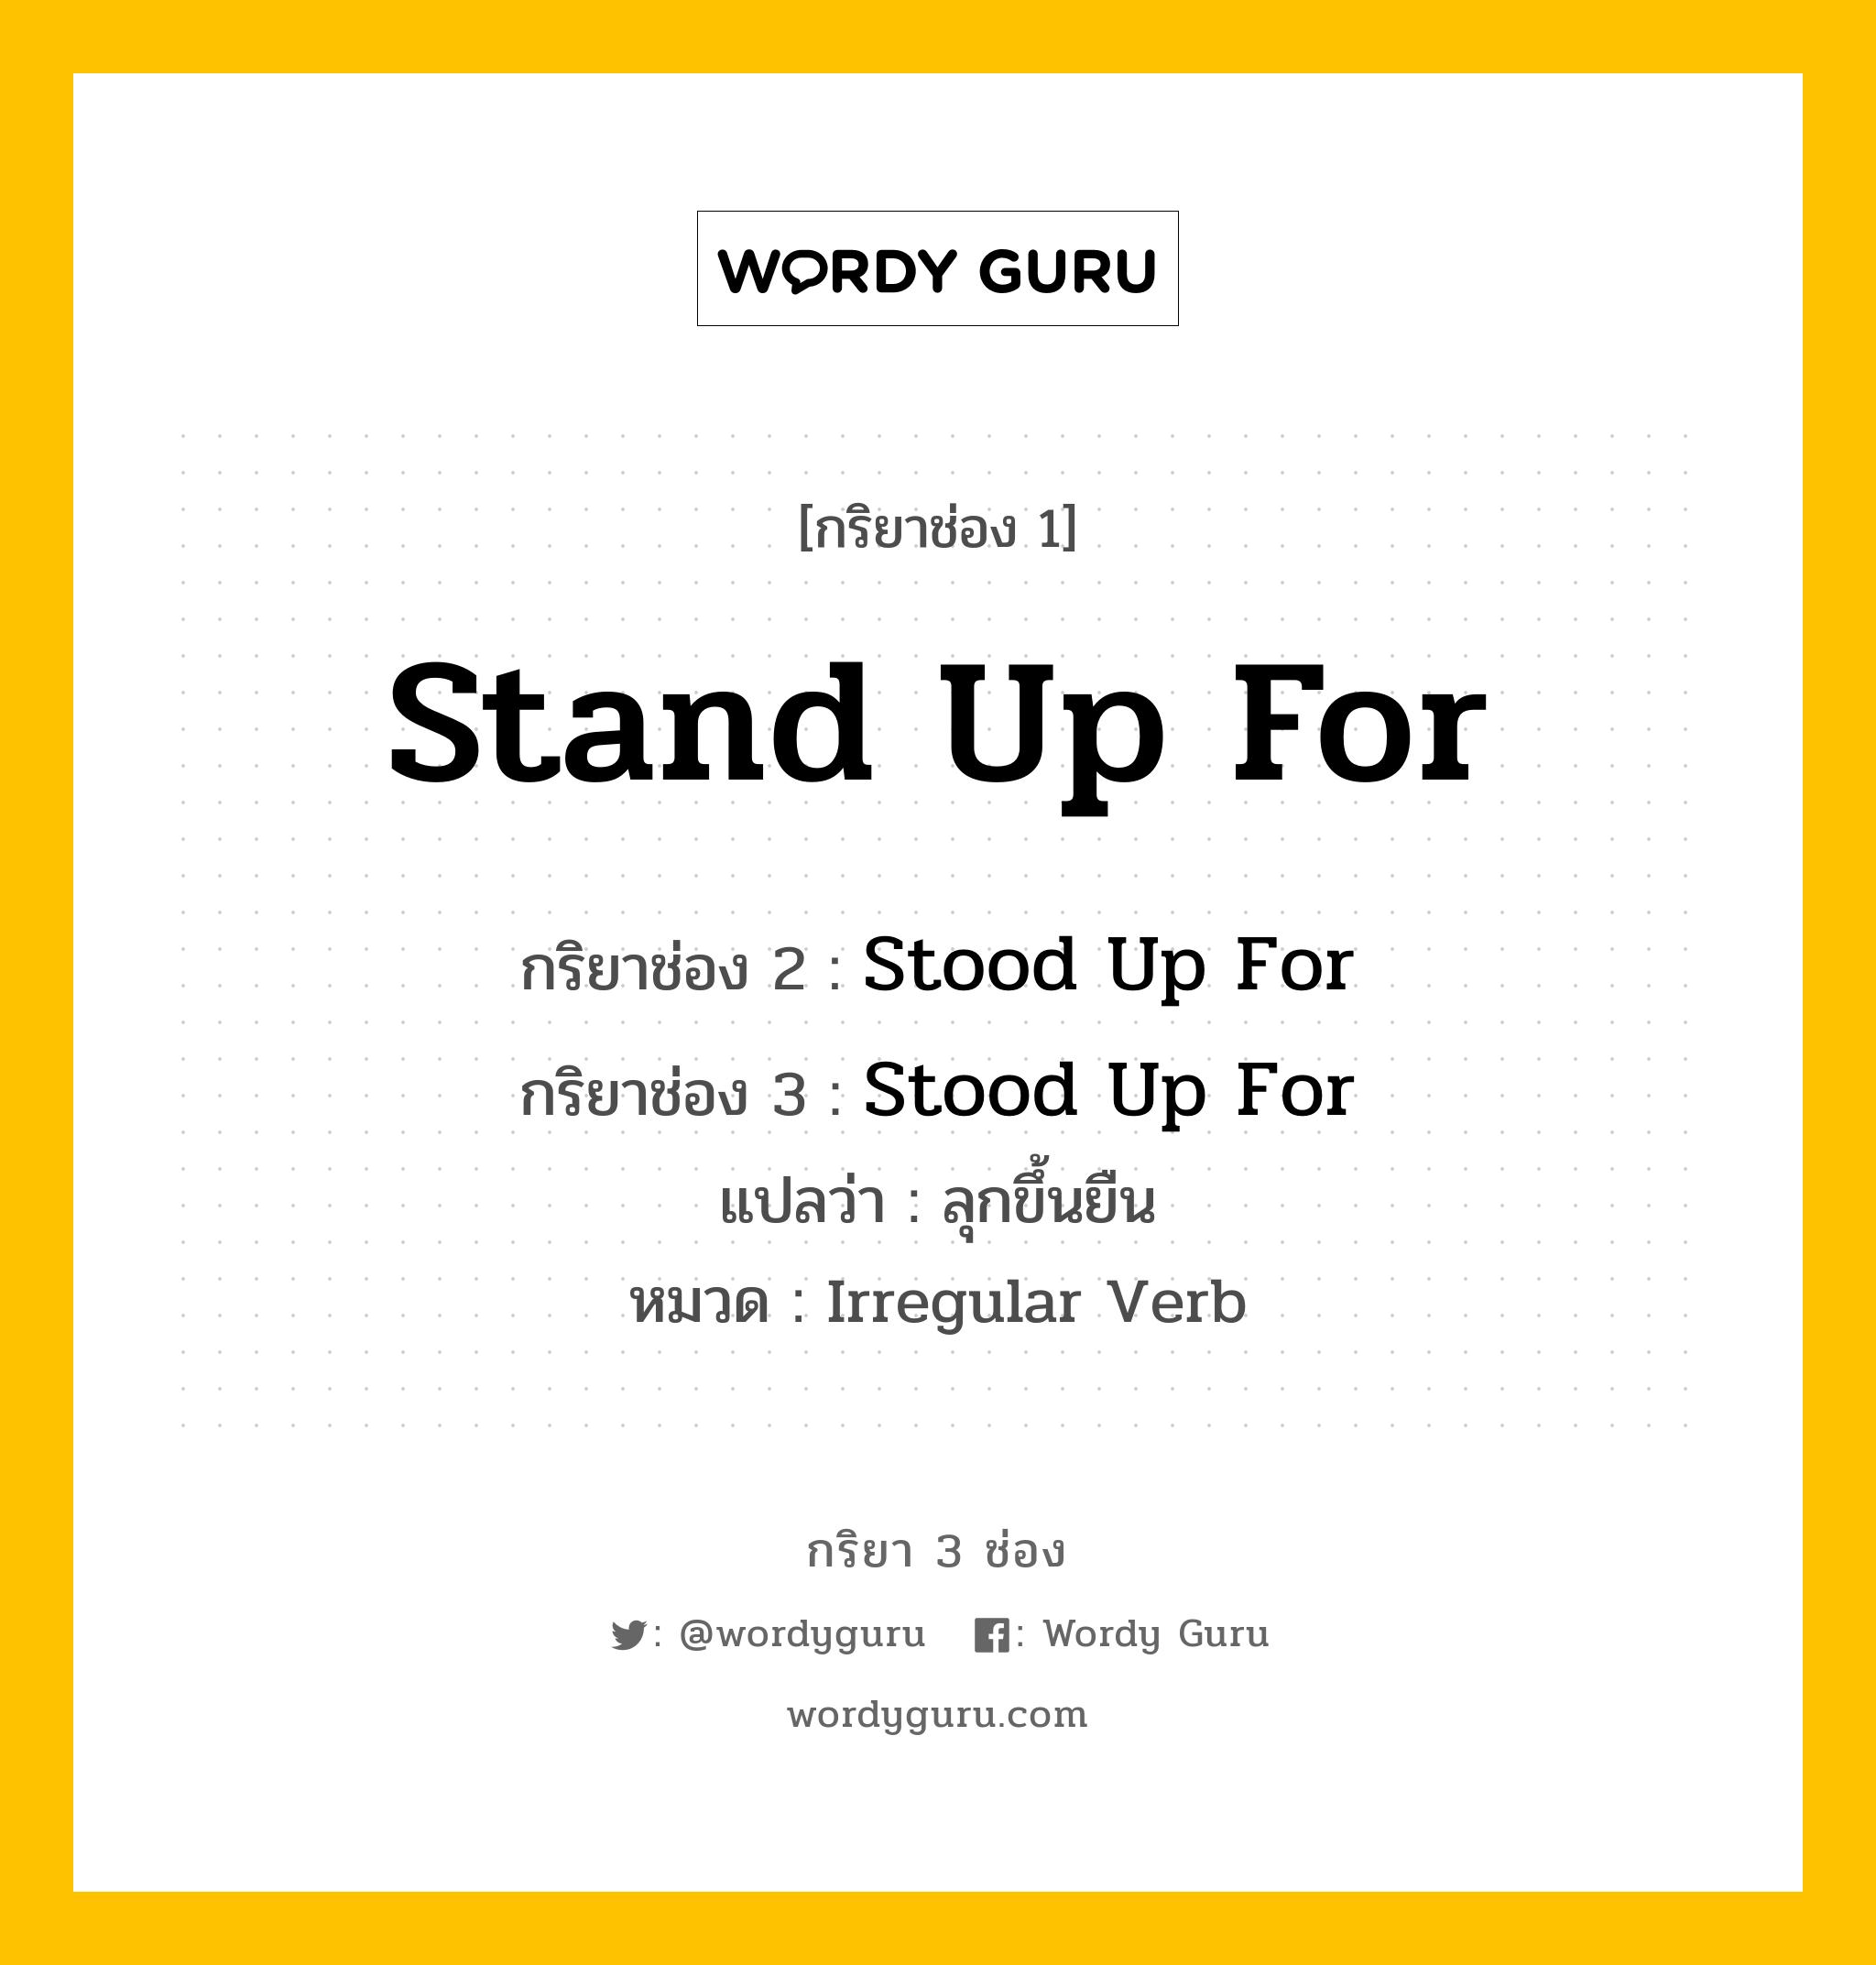 กริยา 3 ช่อง: Stand Up For ช่อง 2 Stand Up For ช่อง 3 คืออะไร, กริยาช่อง 1 Stand Up For กริยาช่อง 2 Stood Up For กริยาช่อง 3 Stood Up For แปลว่า ลุกขึ้นยืน หมวด Irregular Verb หมวด Irregular Verb